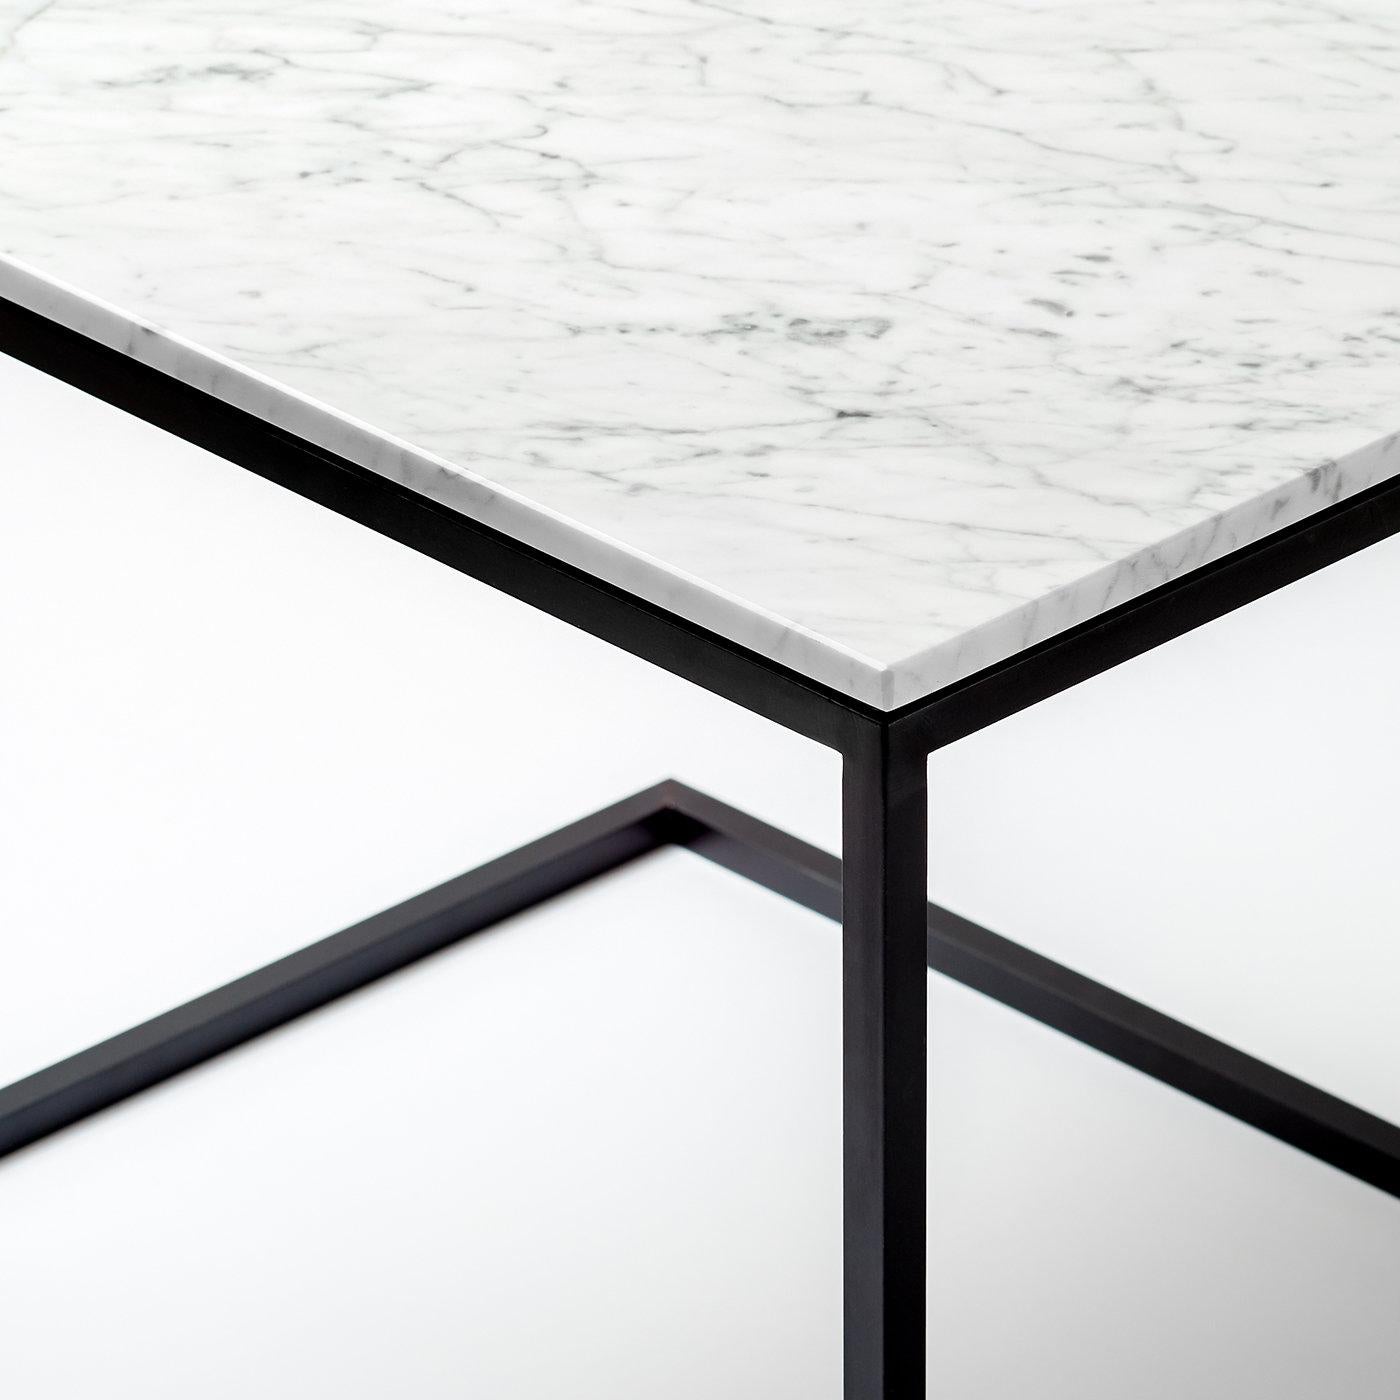 Die zeitlose Kombination von Schwarz und Weiß wird in diesem edlen und eleganten Entwurf von Antonio Saporito auf einzigartige Weise interpretiert. Als Zeugnis minimalistischer Ästhetik und meisterhafter Handwerkskunst besticht er mit einem schwarz